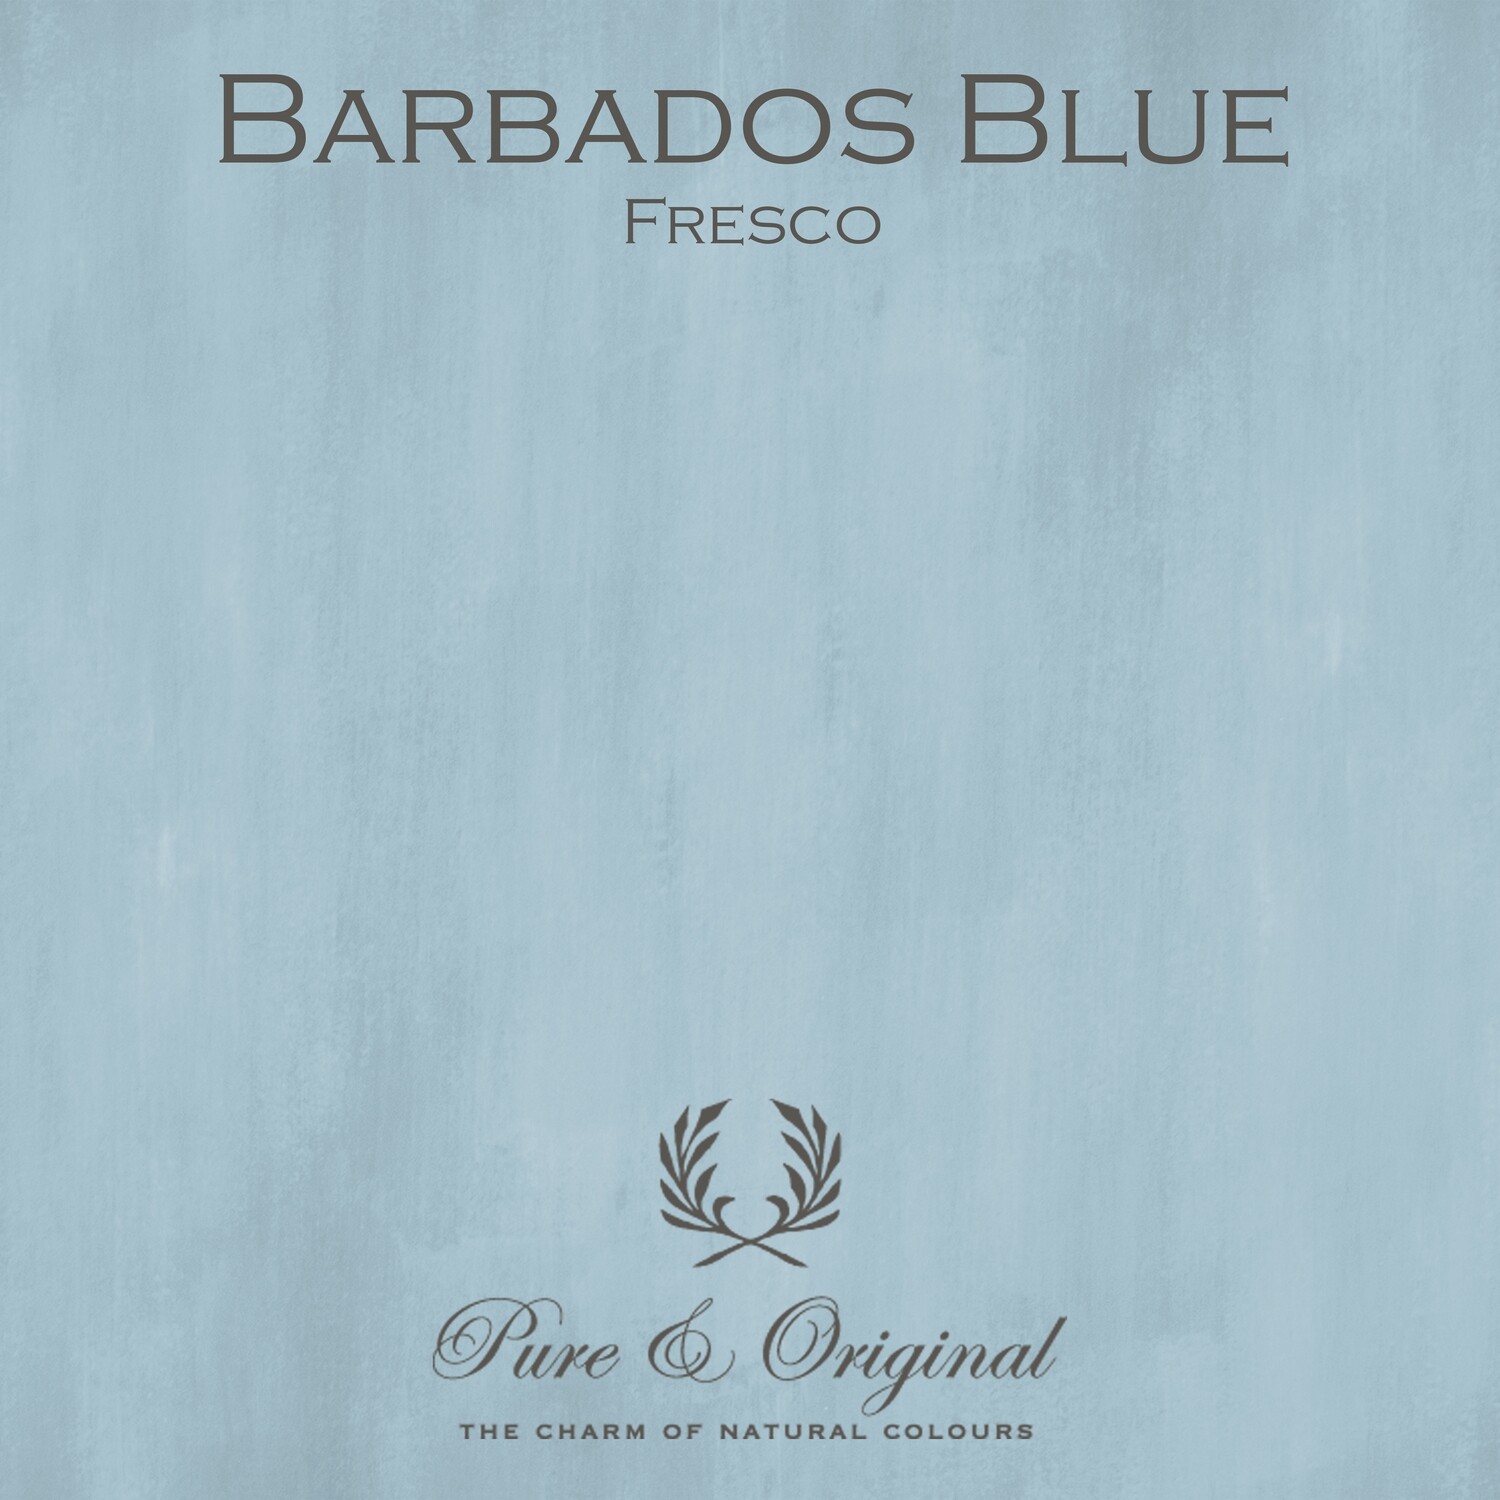 Barbados Blue Fresco